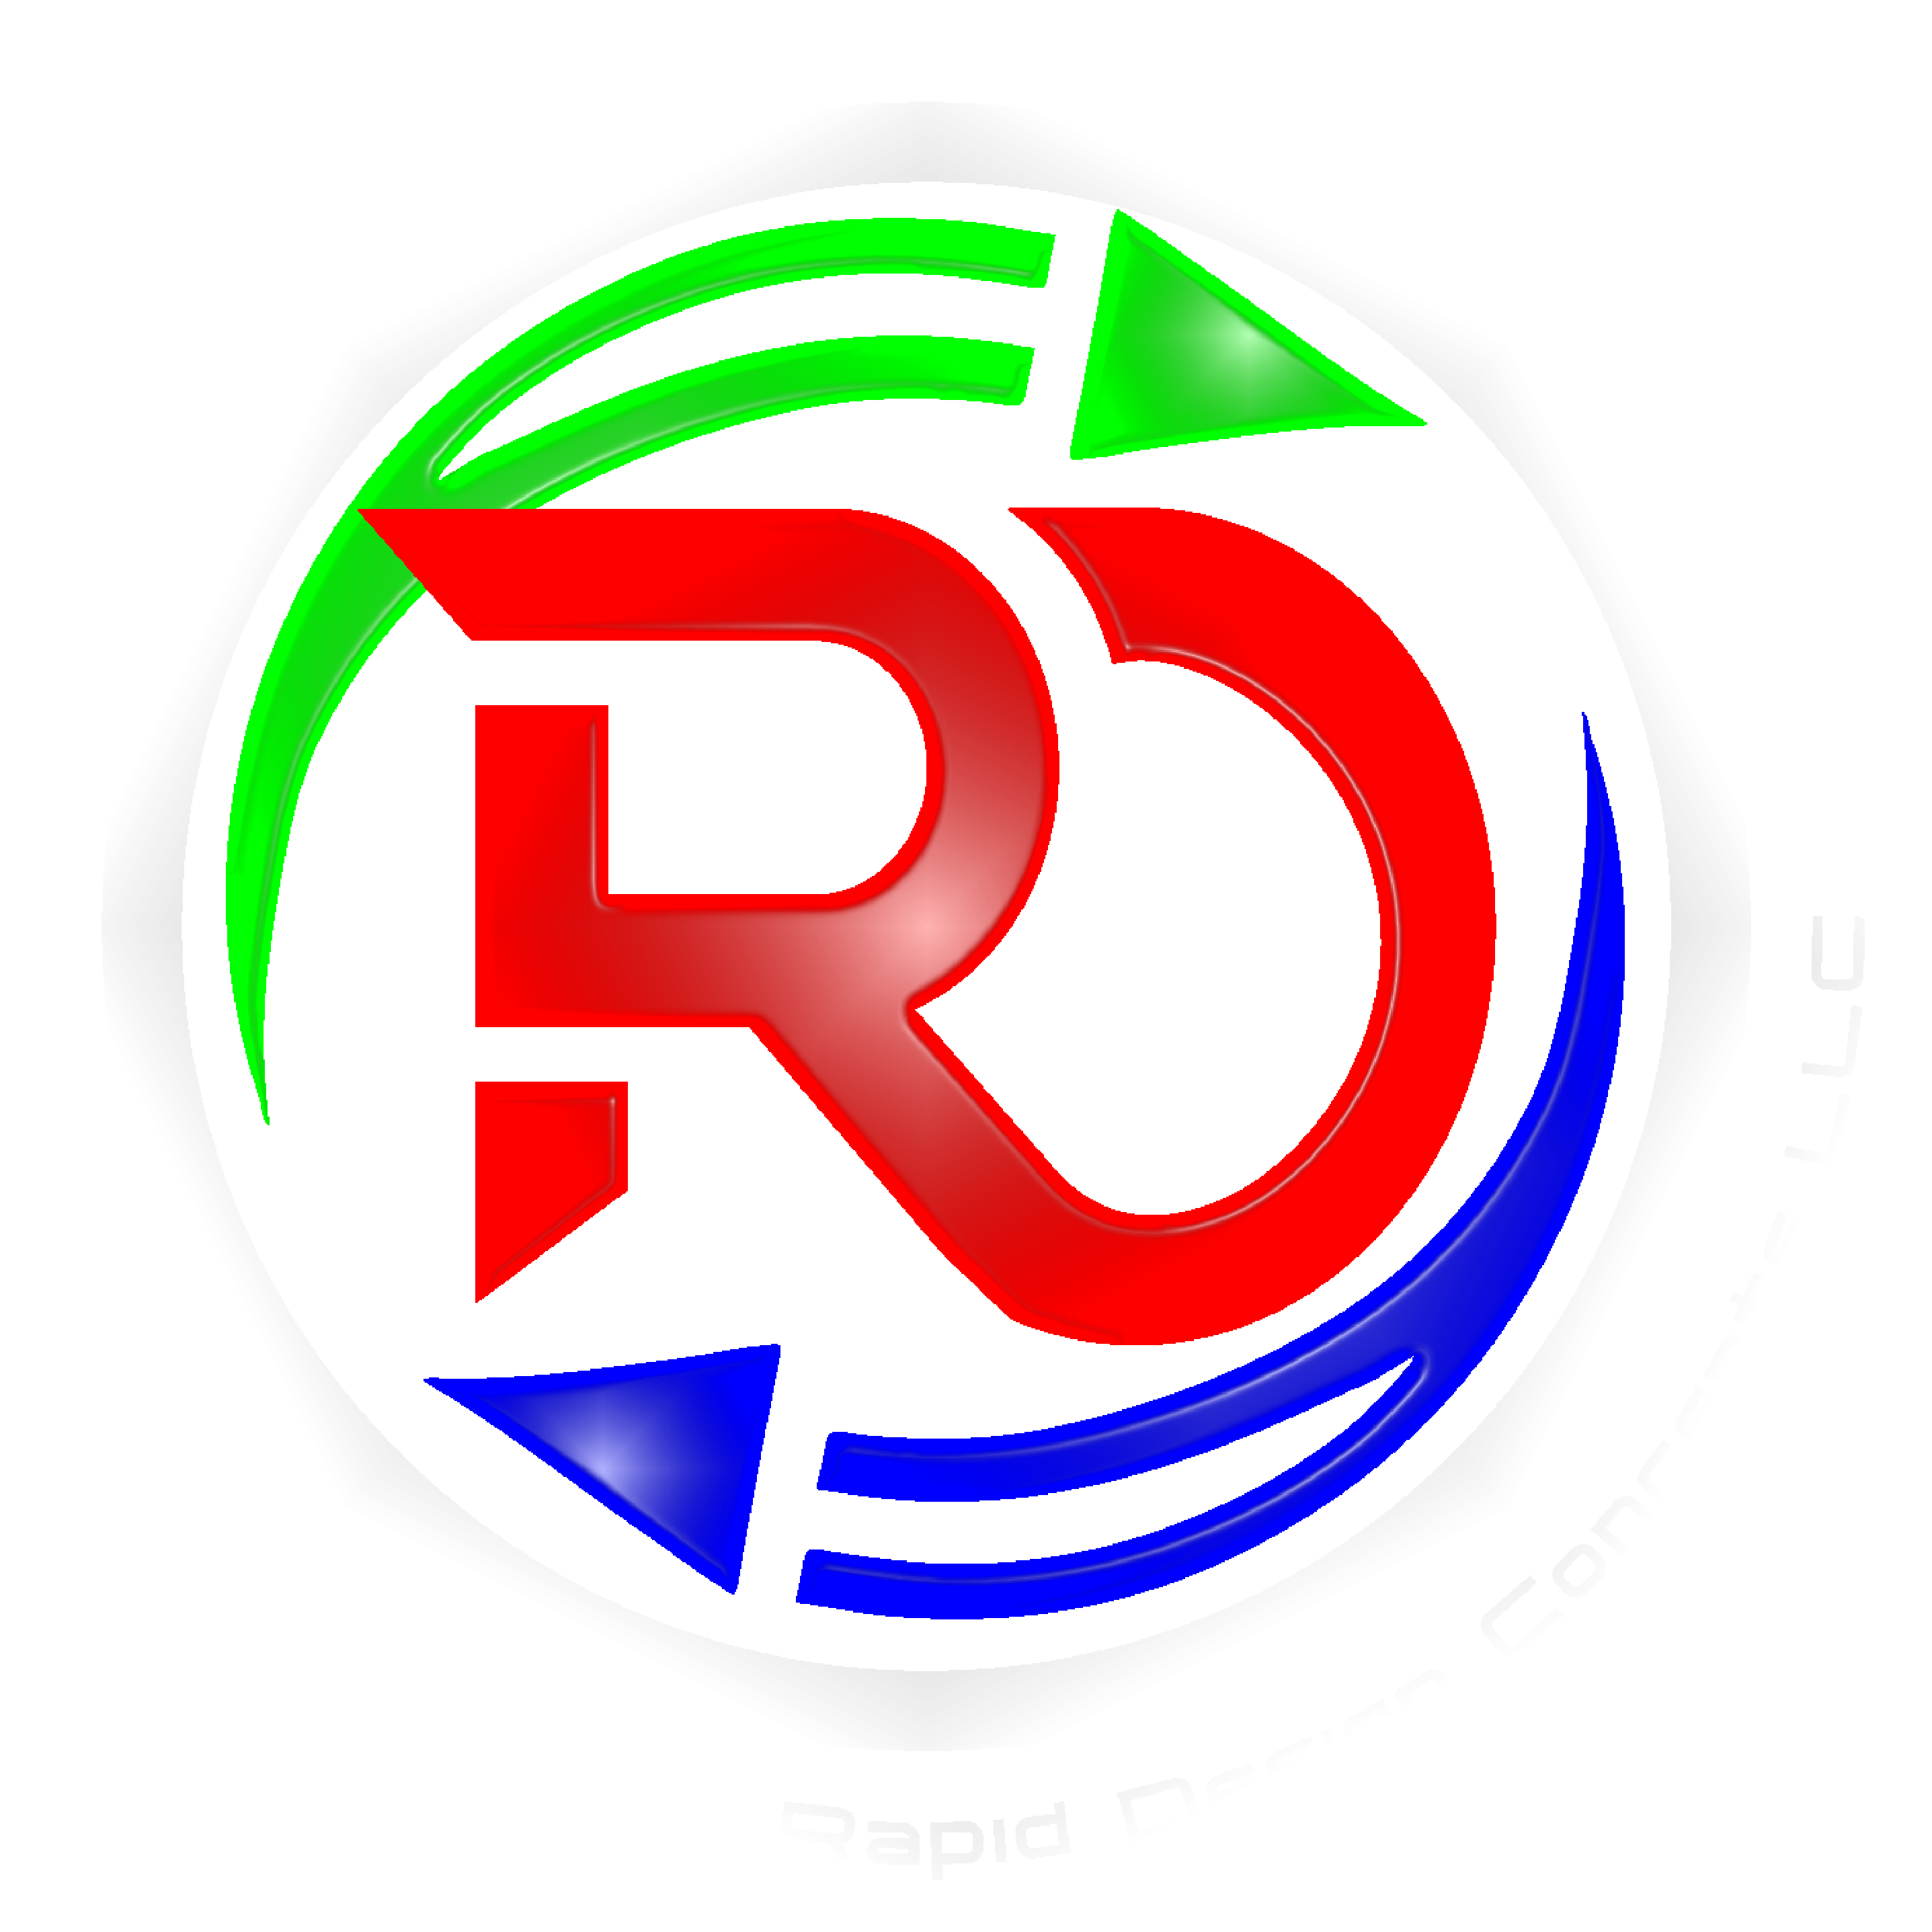 Rapid Design Concepts LLC